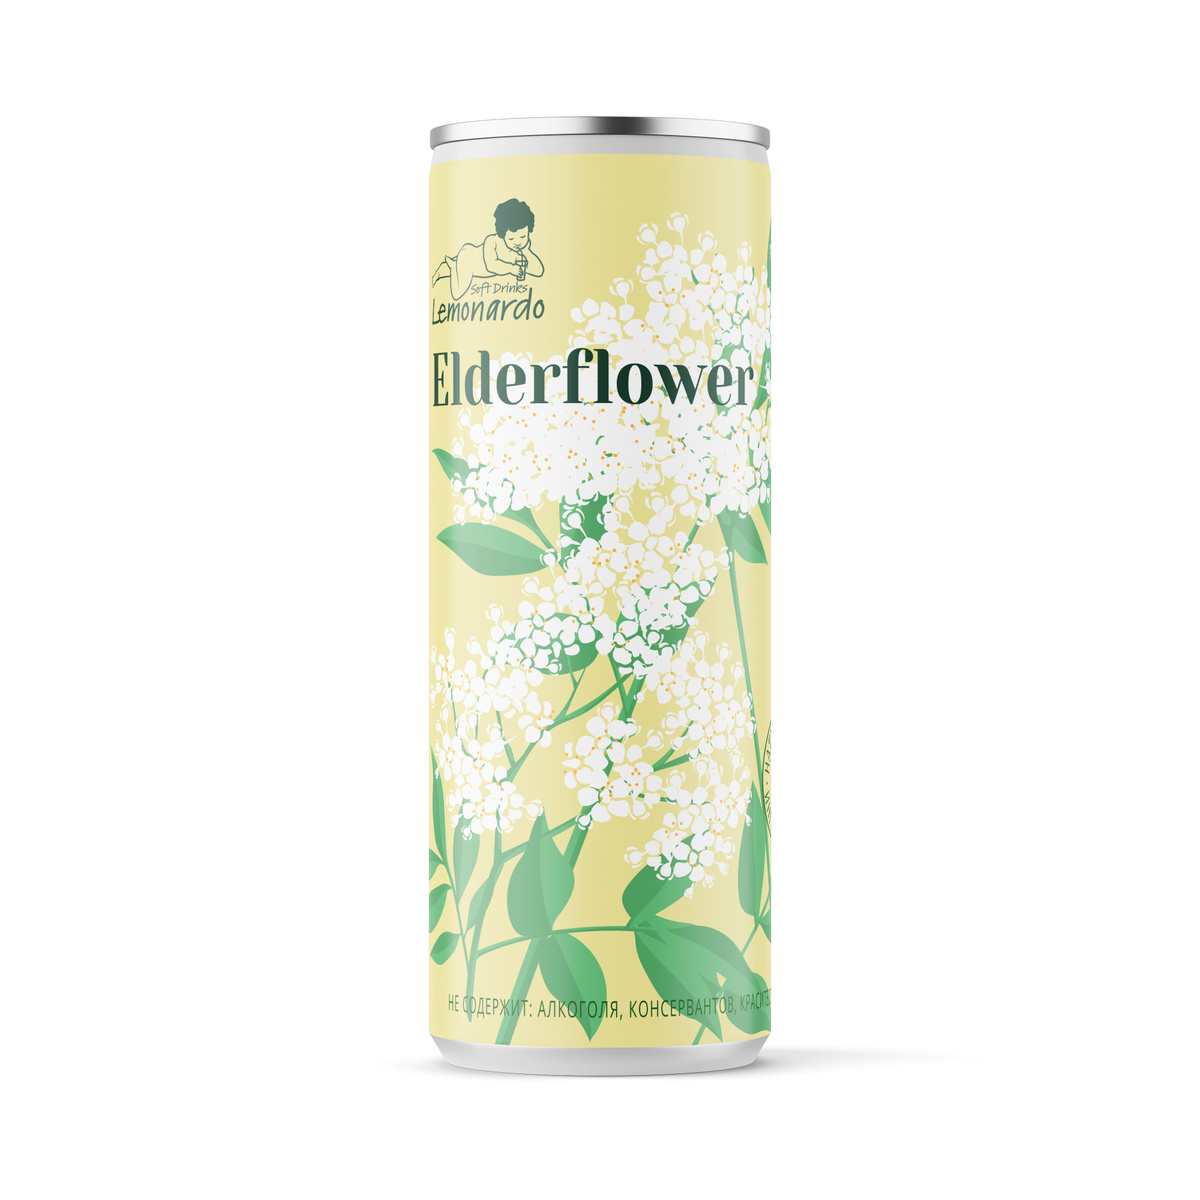 Натуральный лимонад из цветов бузины / Lemonardo Elderflower